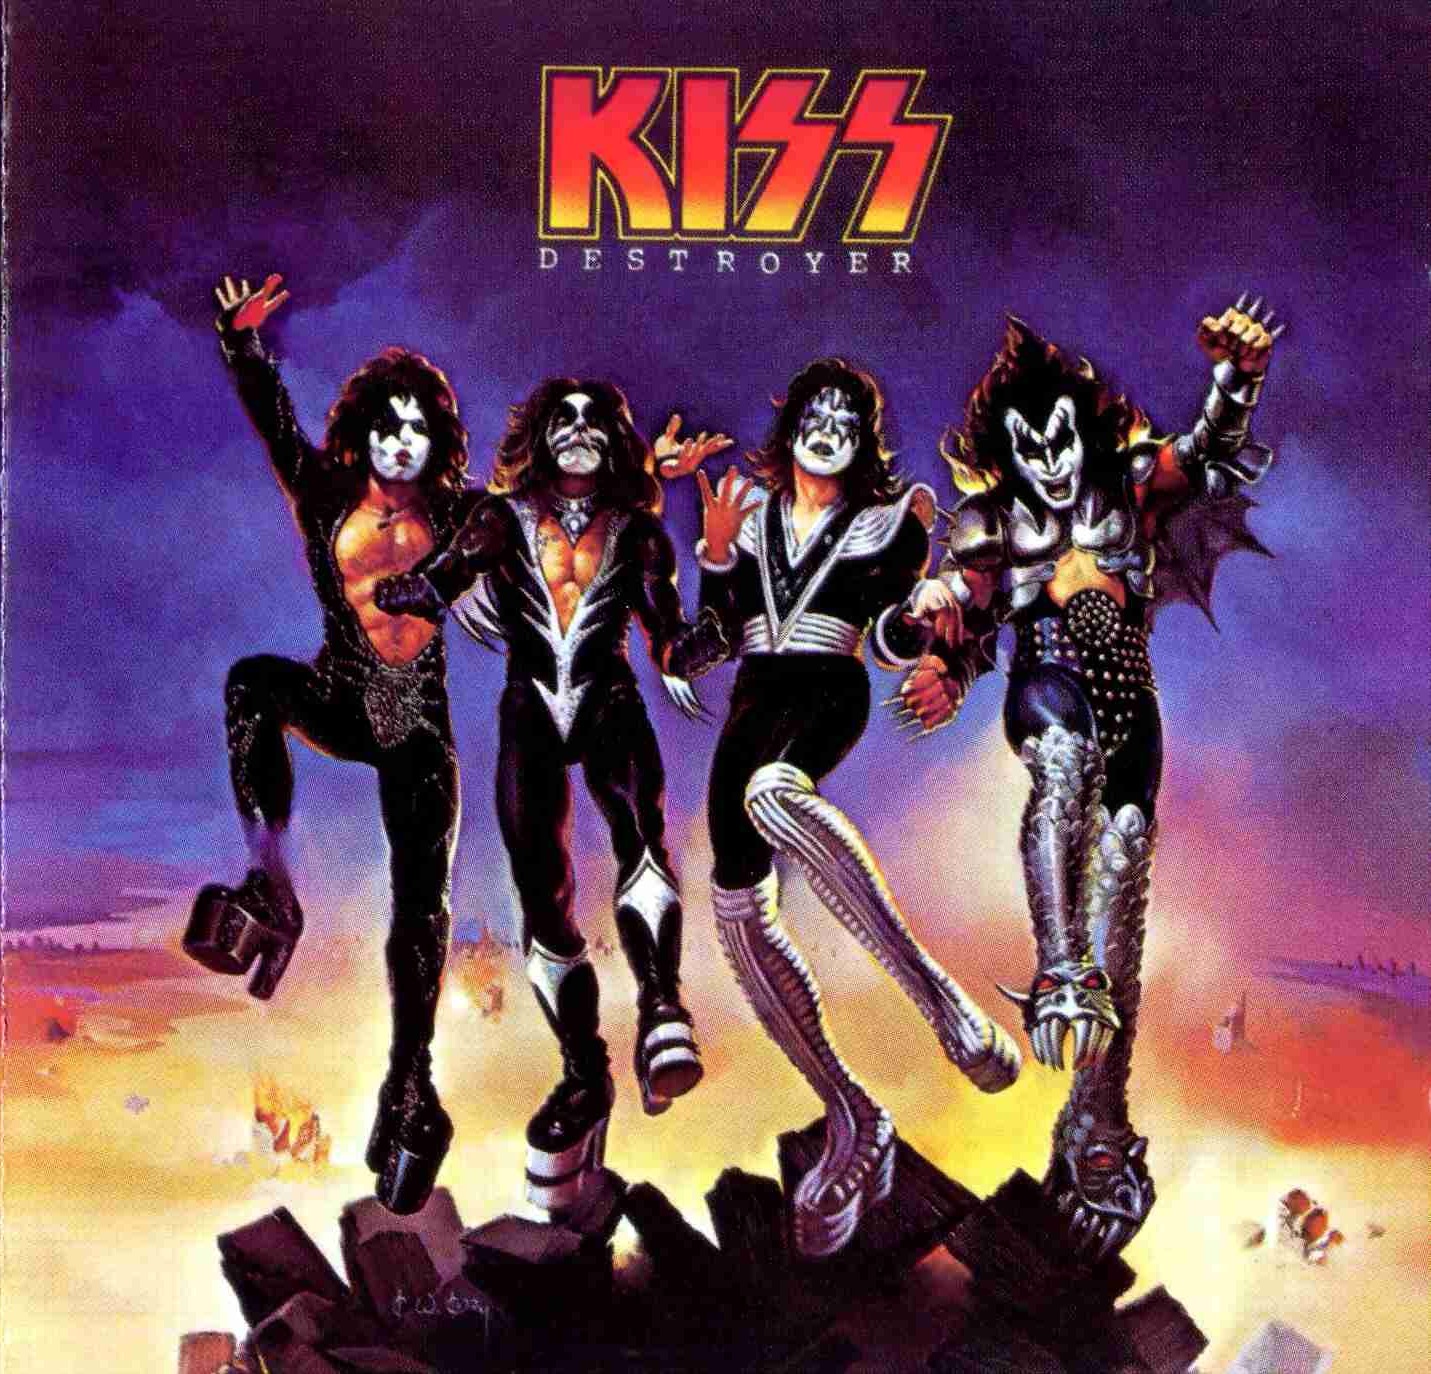 Επετειακή έκδοση του Destroyer των Kiss